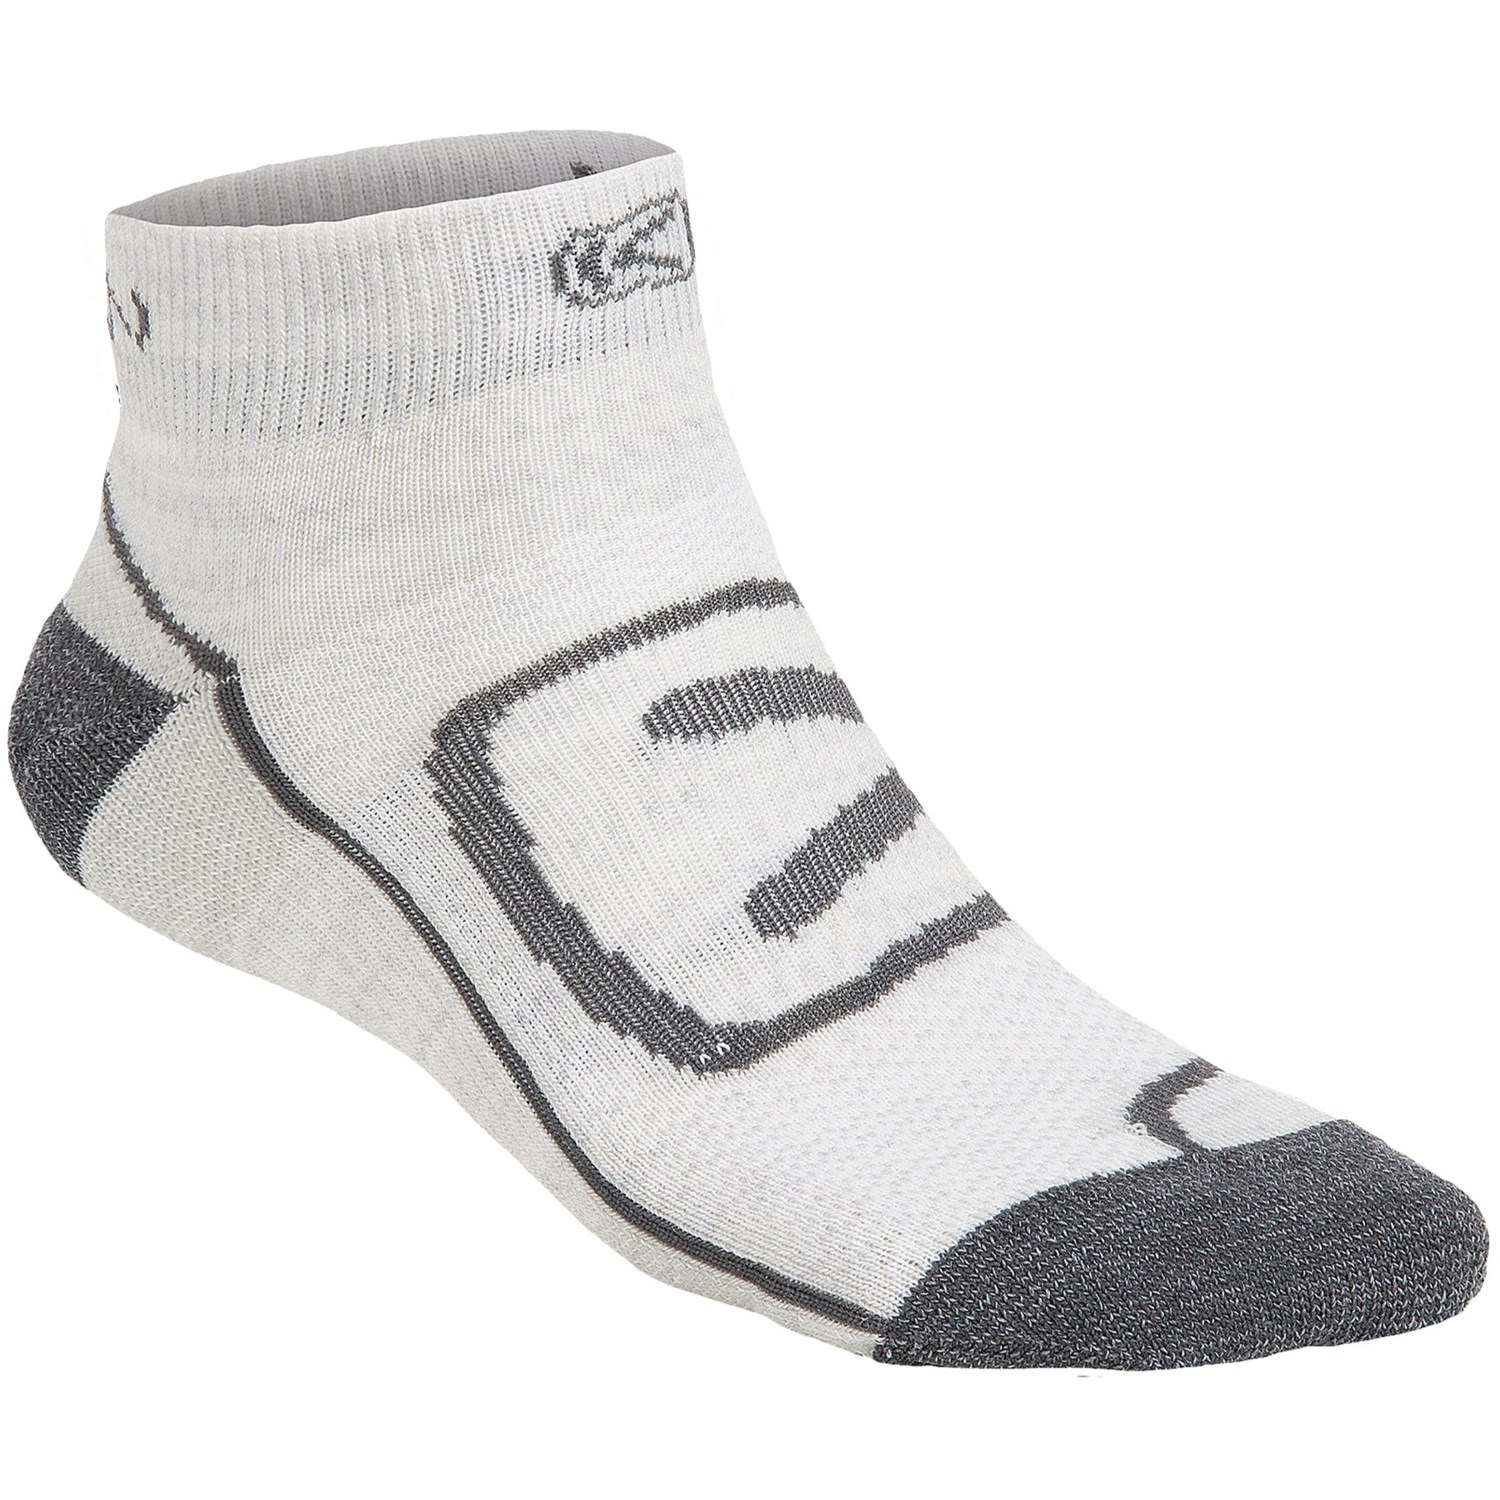 Keen Zip Hyperlite Low Cut Socks - Merino Wool (For Men) in Soft Grey ...